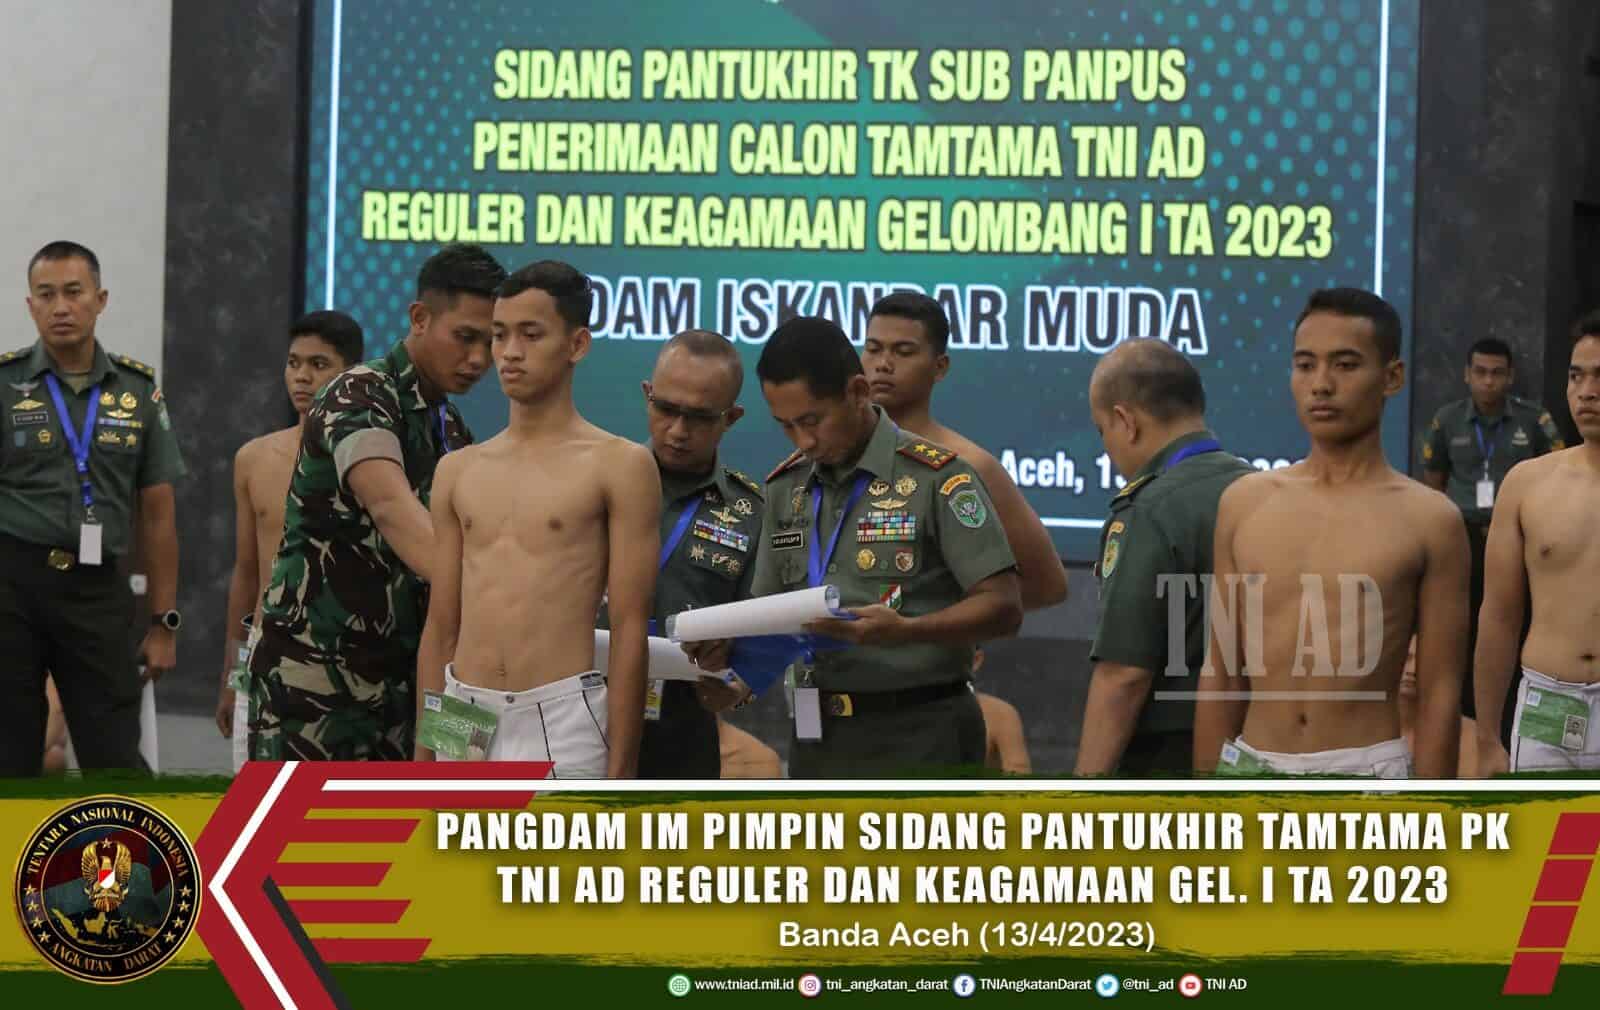 Pangdam IM Pimpin Sidang Pantukhir Tamtama PK TNI AD Reguler dan Keagamaan Gel. I TA 2023